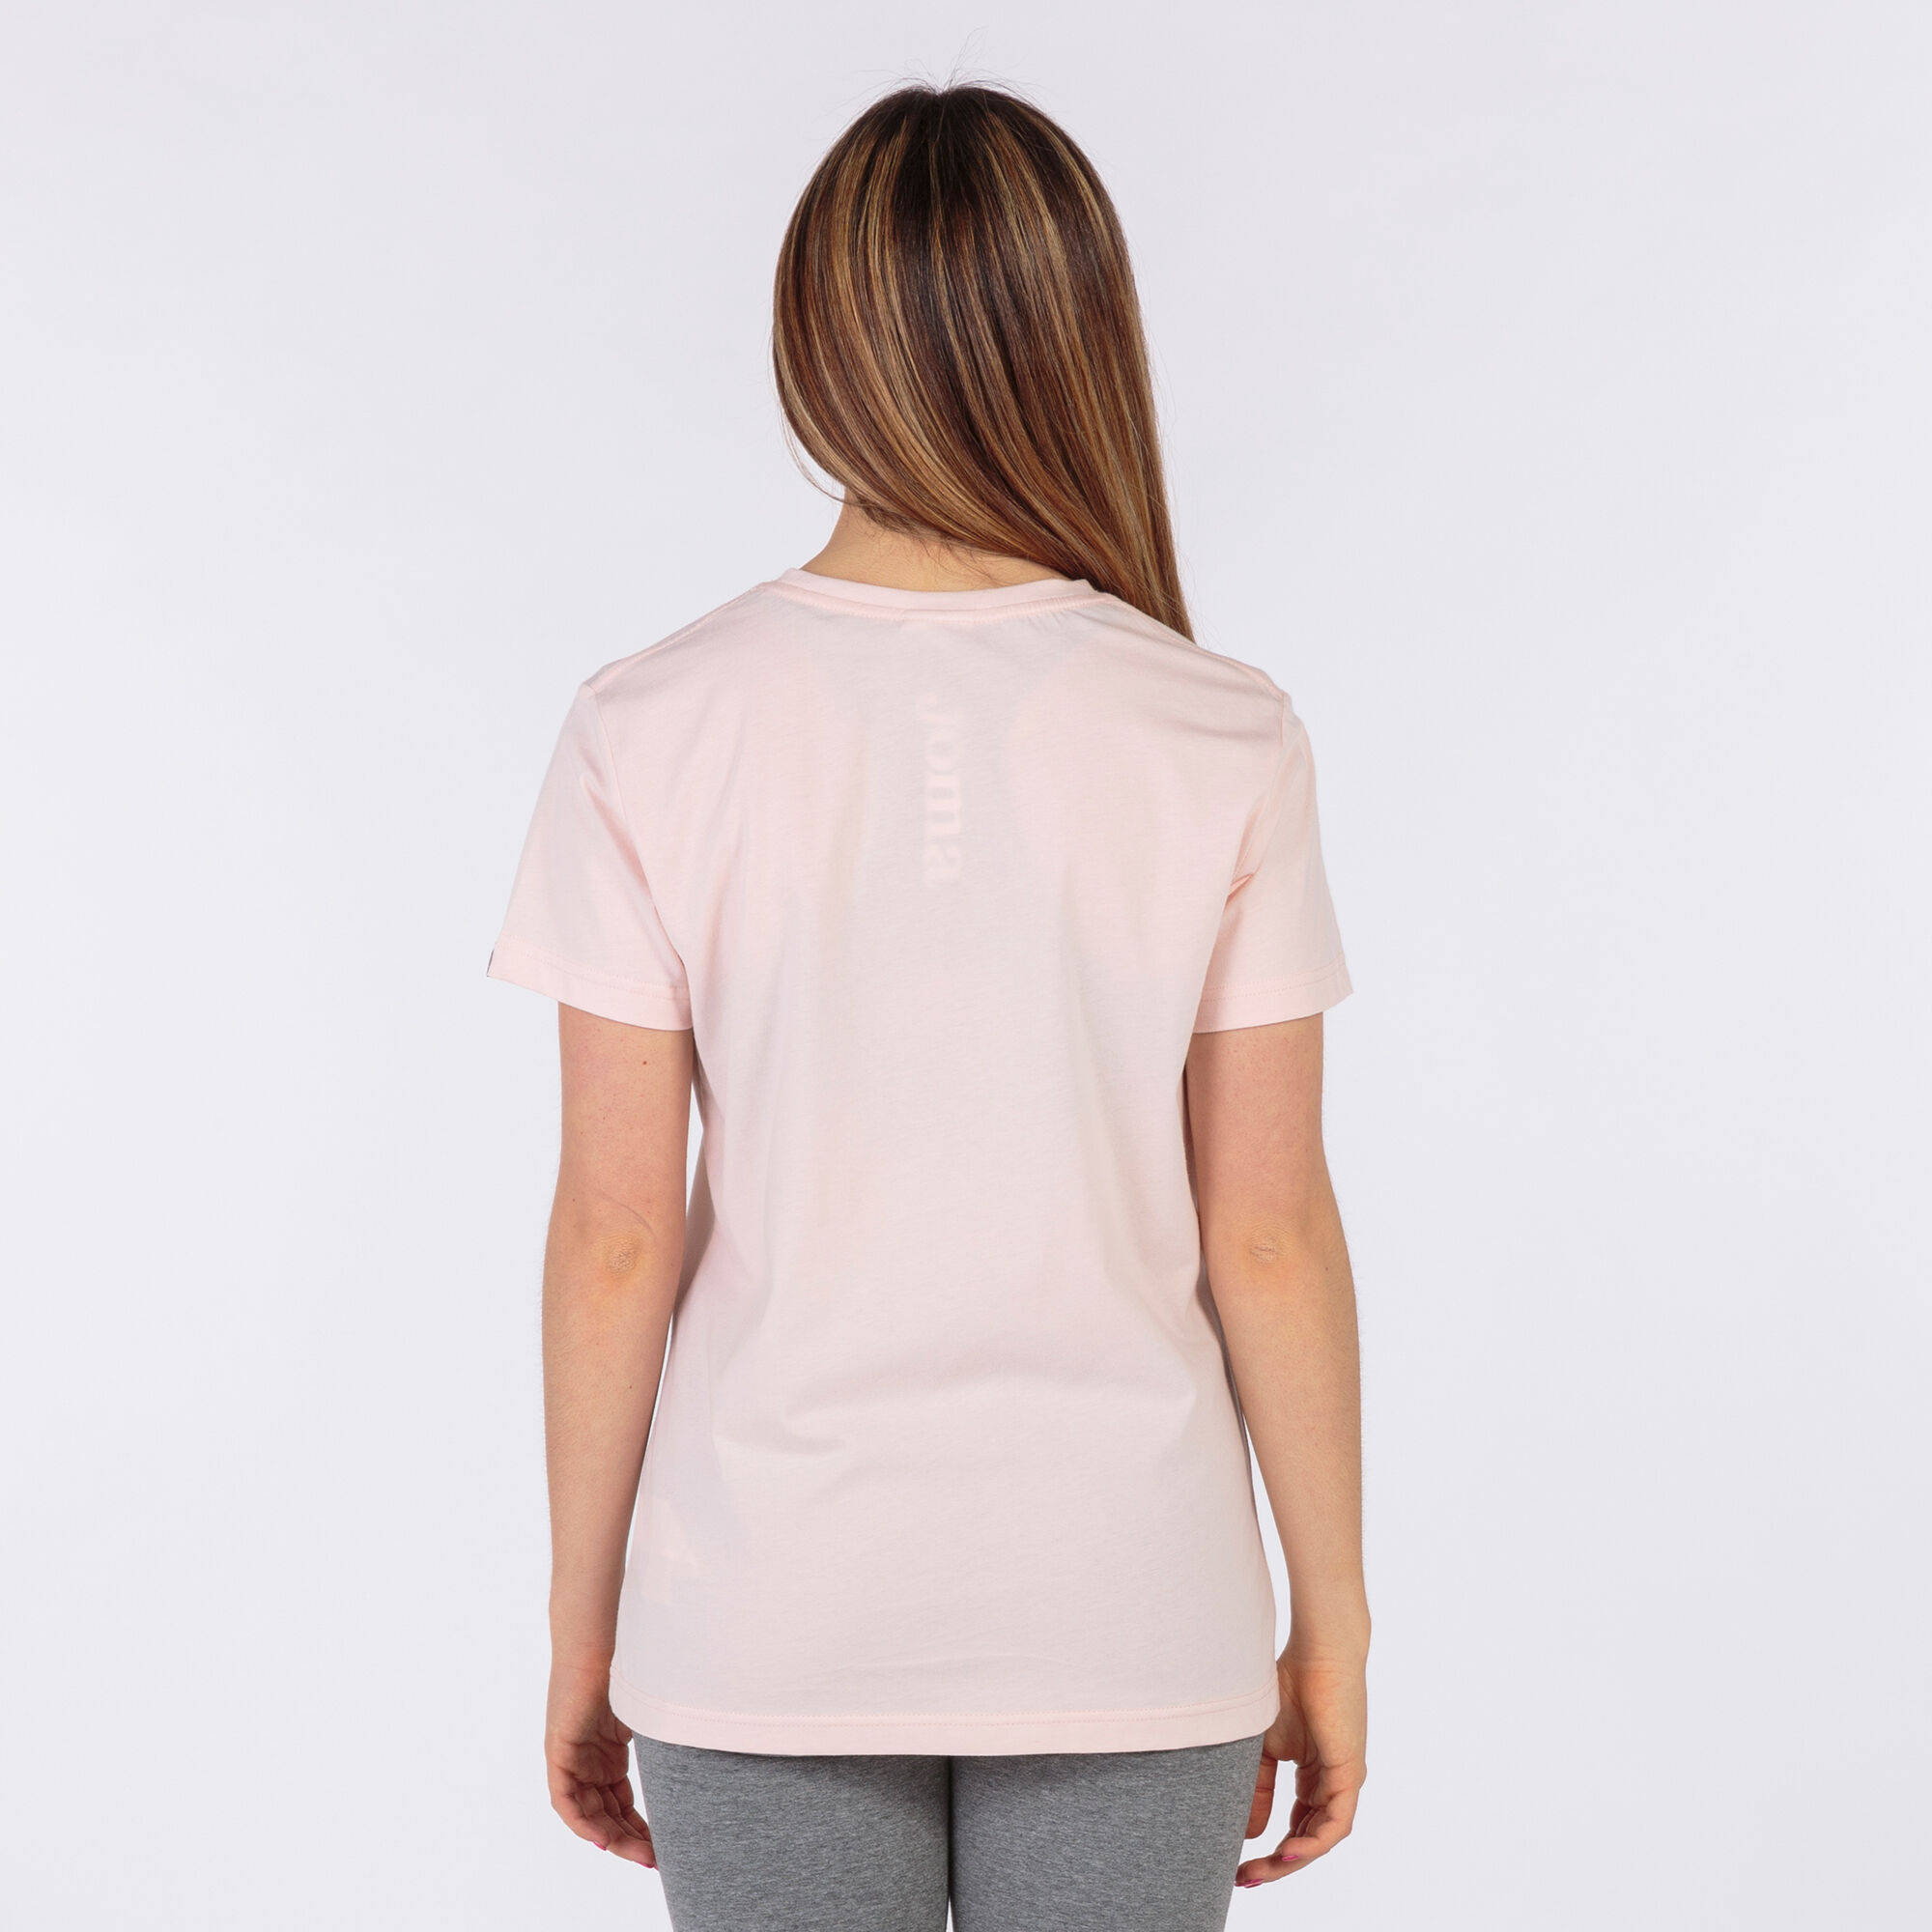 Shirt short sleeve woman Desert light pink